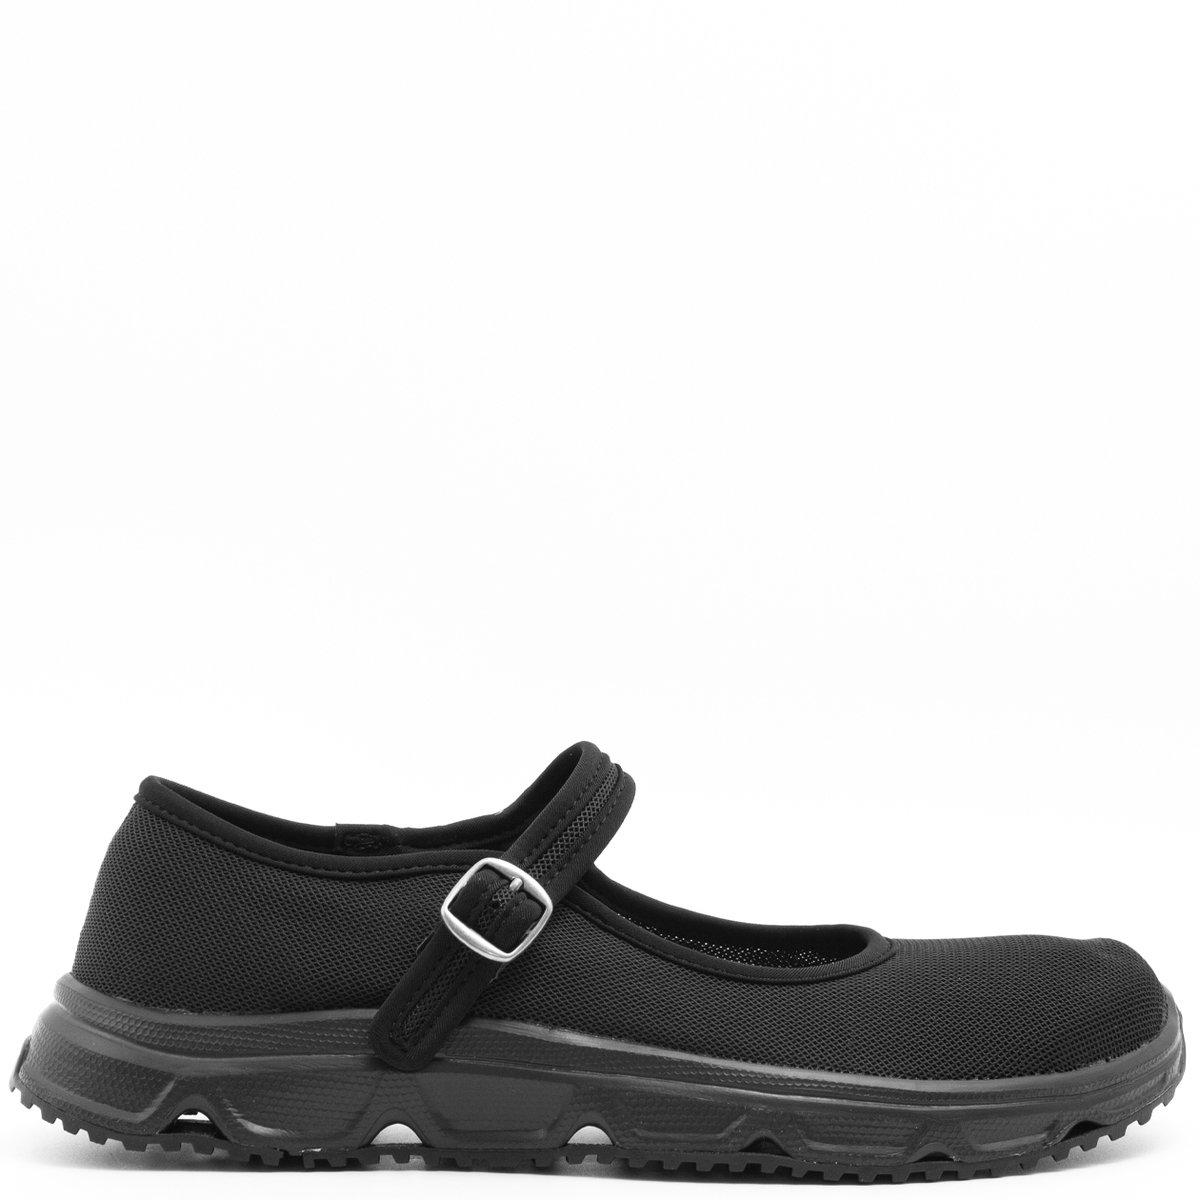 Comme des Garçons X Salomon Mary Jane Rx 3.0 Shoes Black | Lyst UK